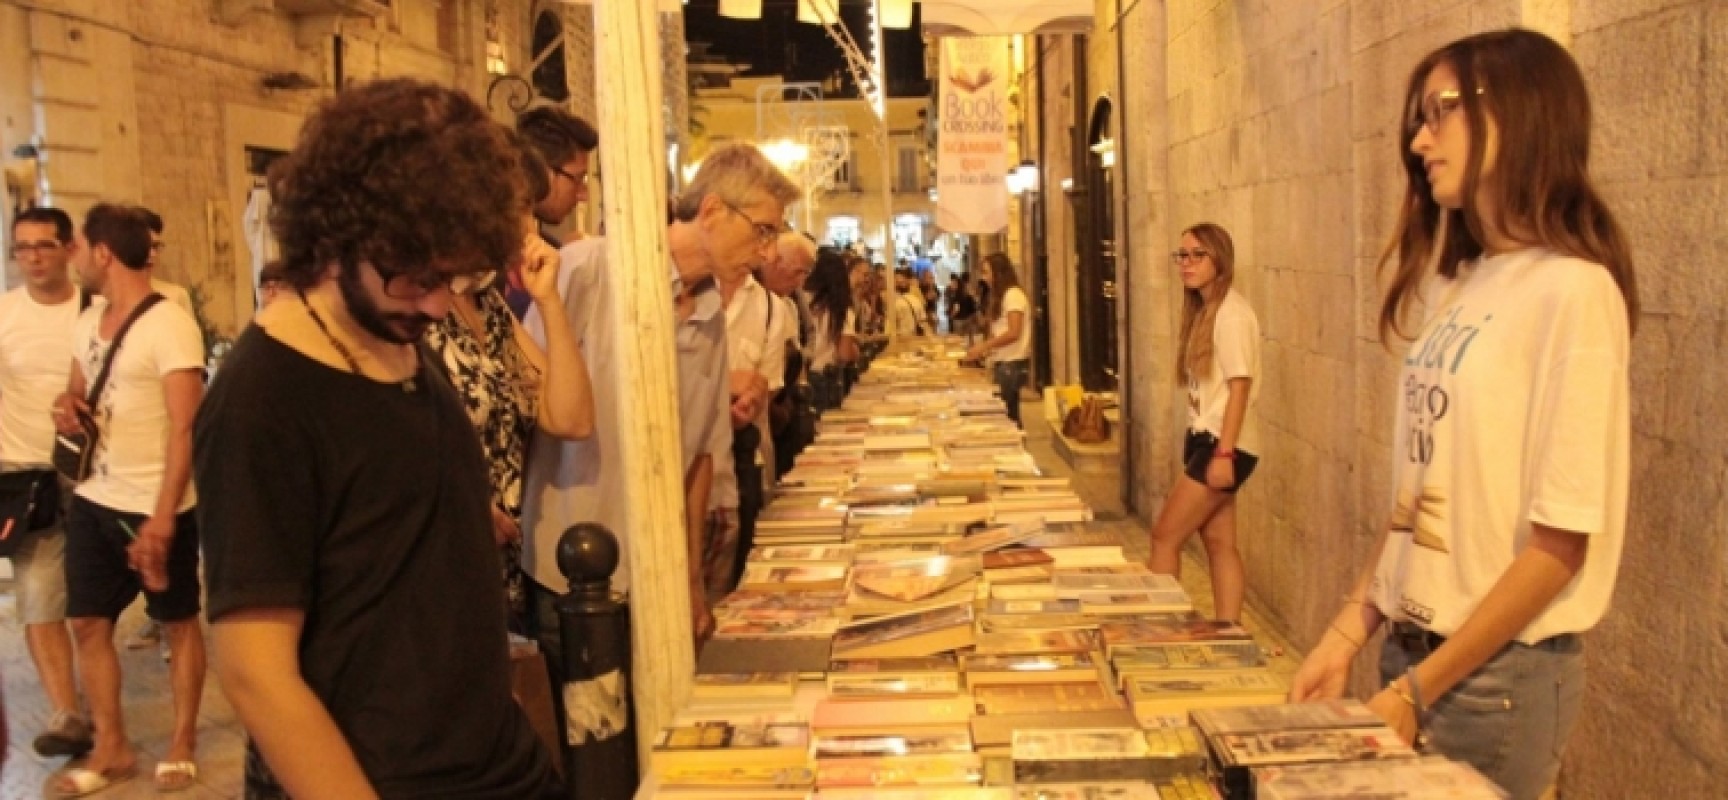 Cultura e solidarietà: “Libri nel Borgo Antico” 2015 si fa laboratorio d’integrazione